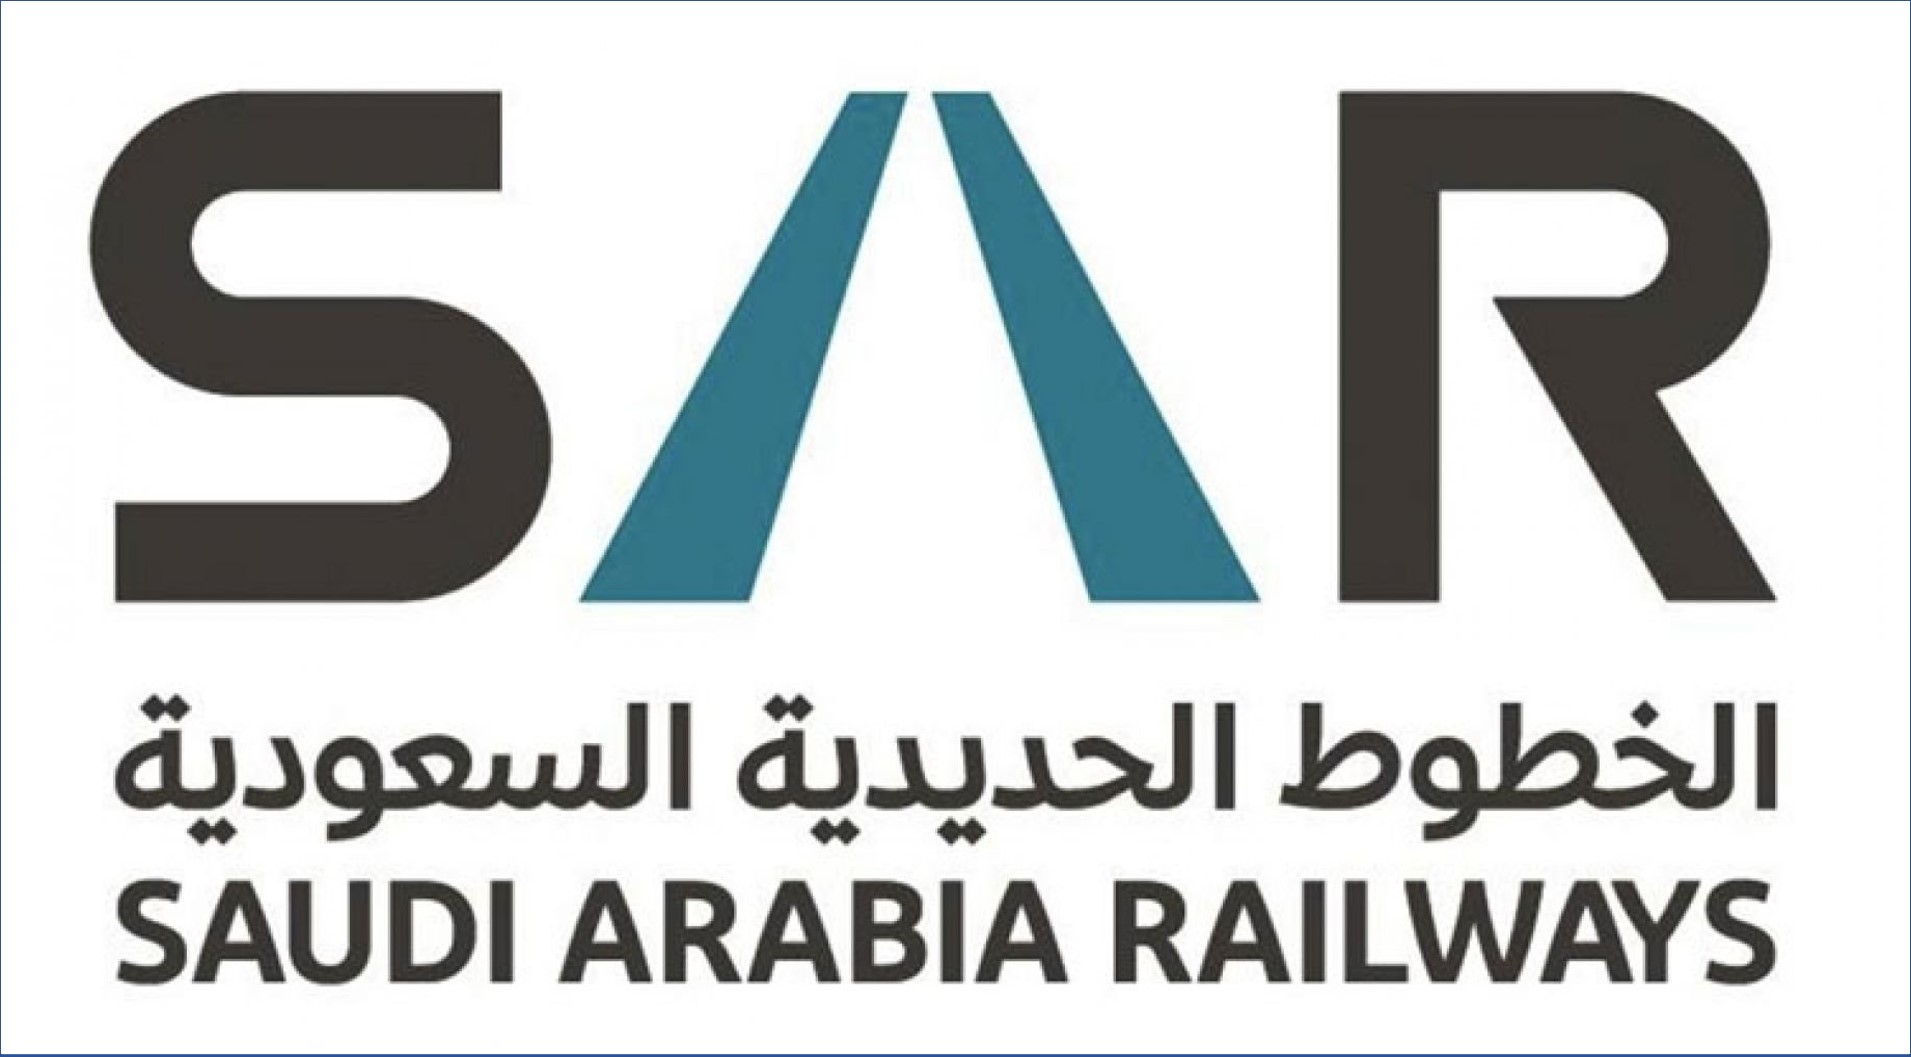 الخطوط الحديدية السعودية تعلن عن 7000 وظيفة موسمية